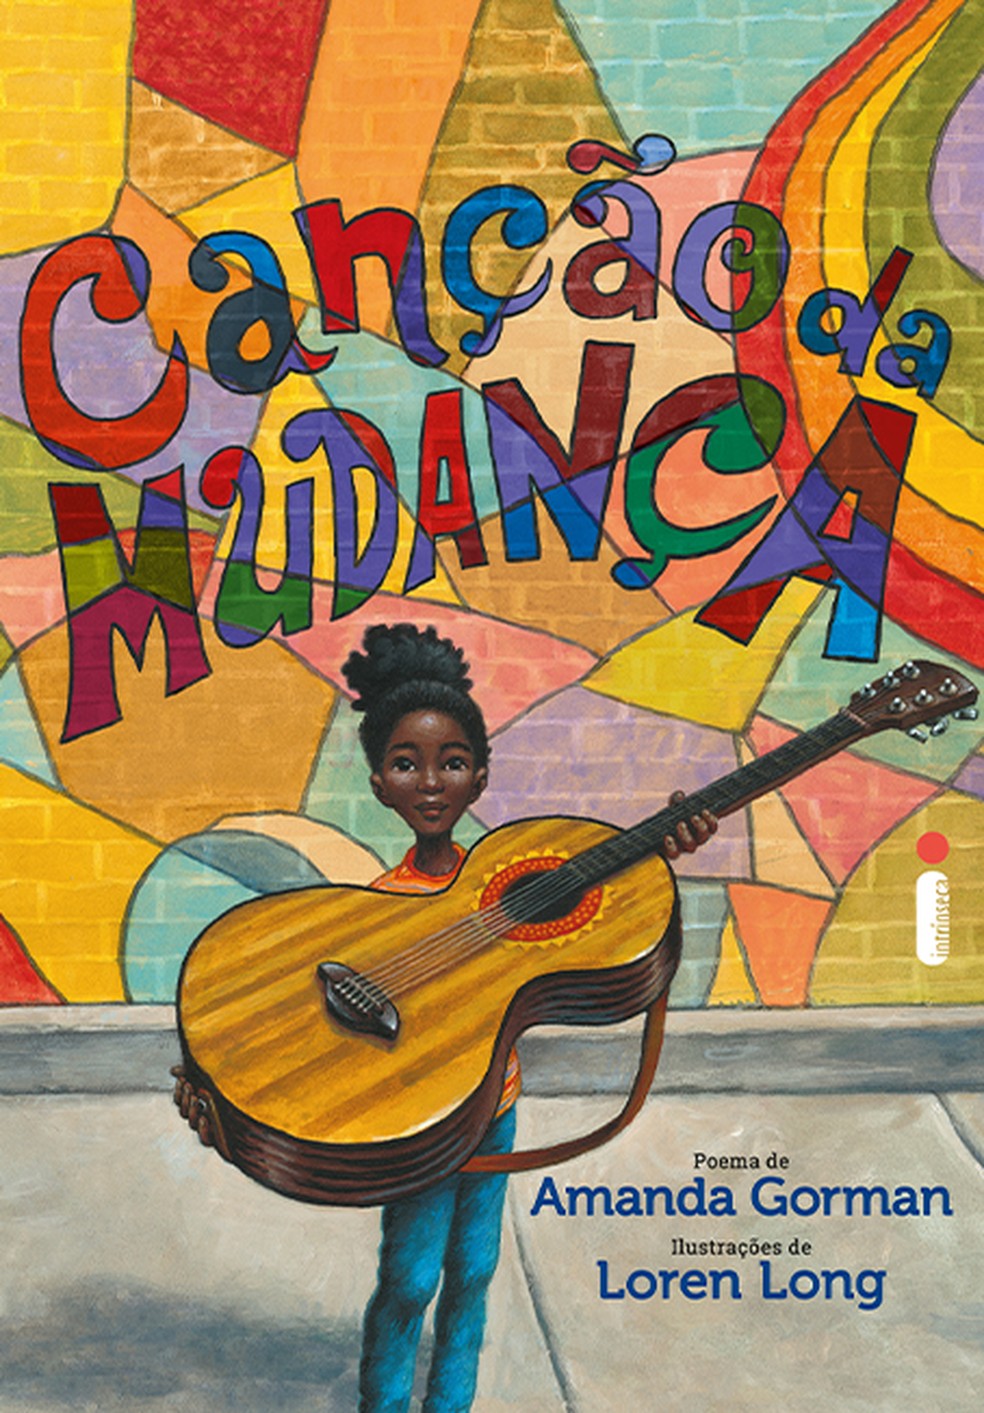 Canção da Mudança, de Amanda Gorman e Loren Long: livro ilustrado que convida as crianças à ação. — Foto: Intrínseca / Divulgação